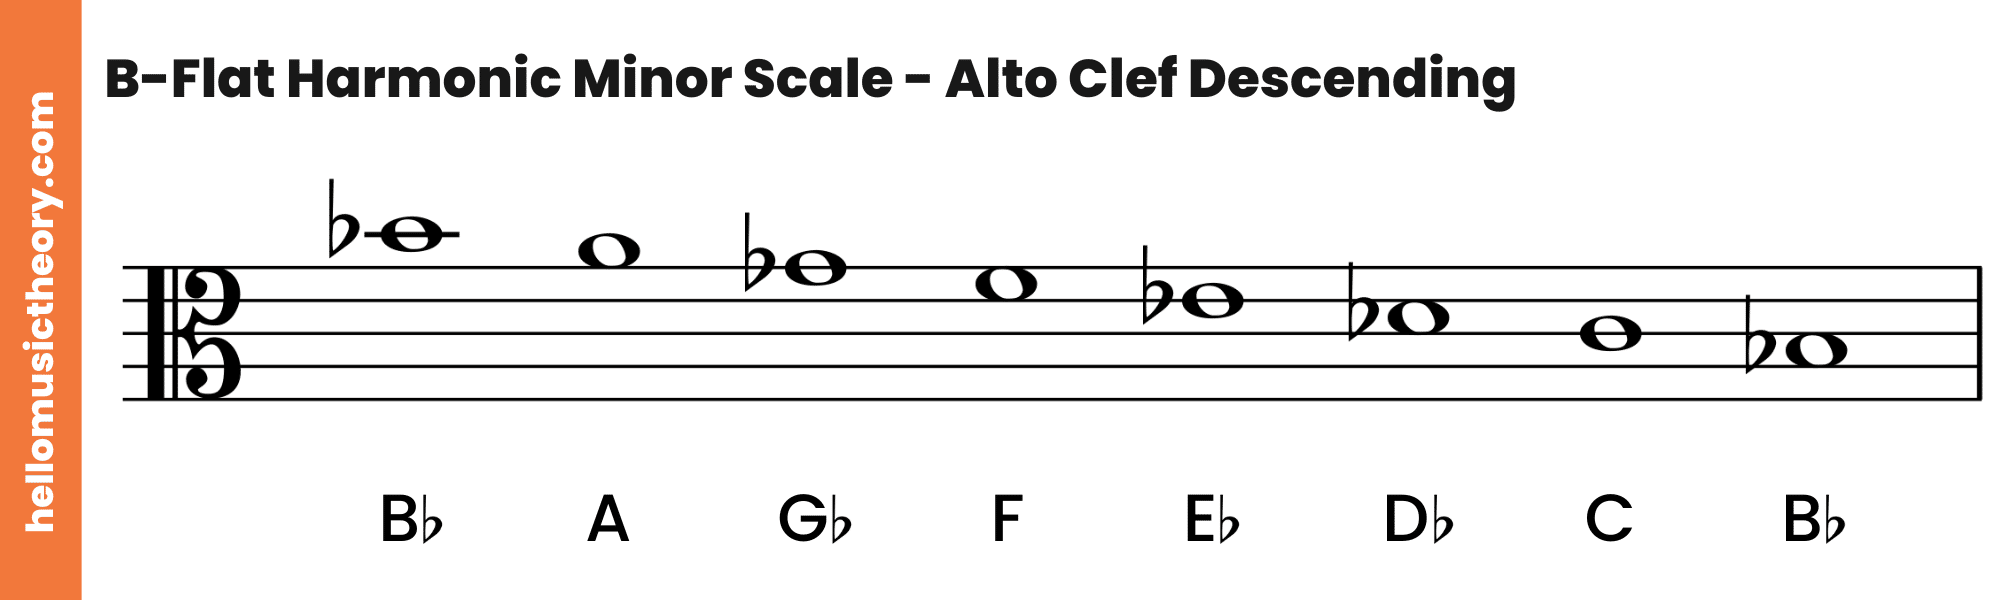 B-Flat Harmonic Minor Scale Alto Clef Descending